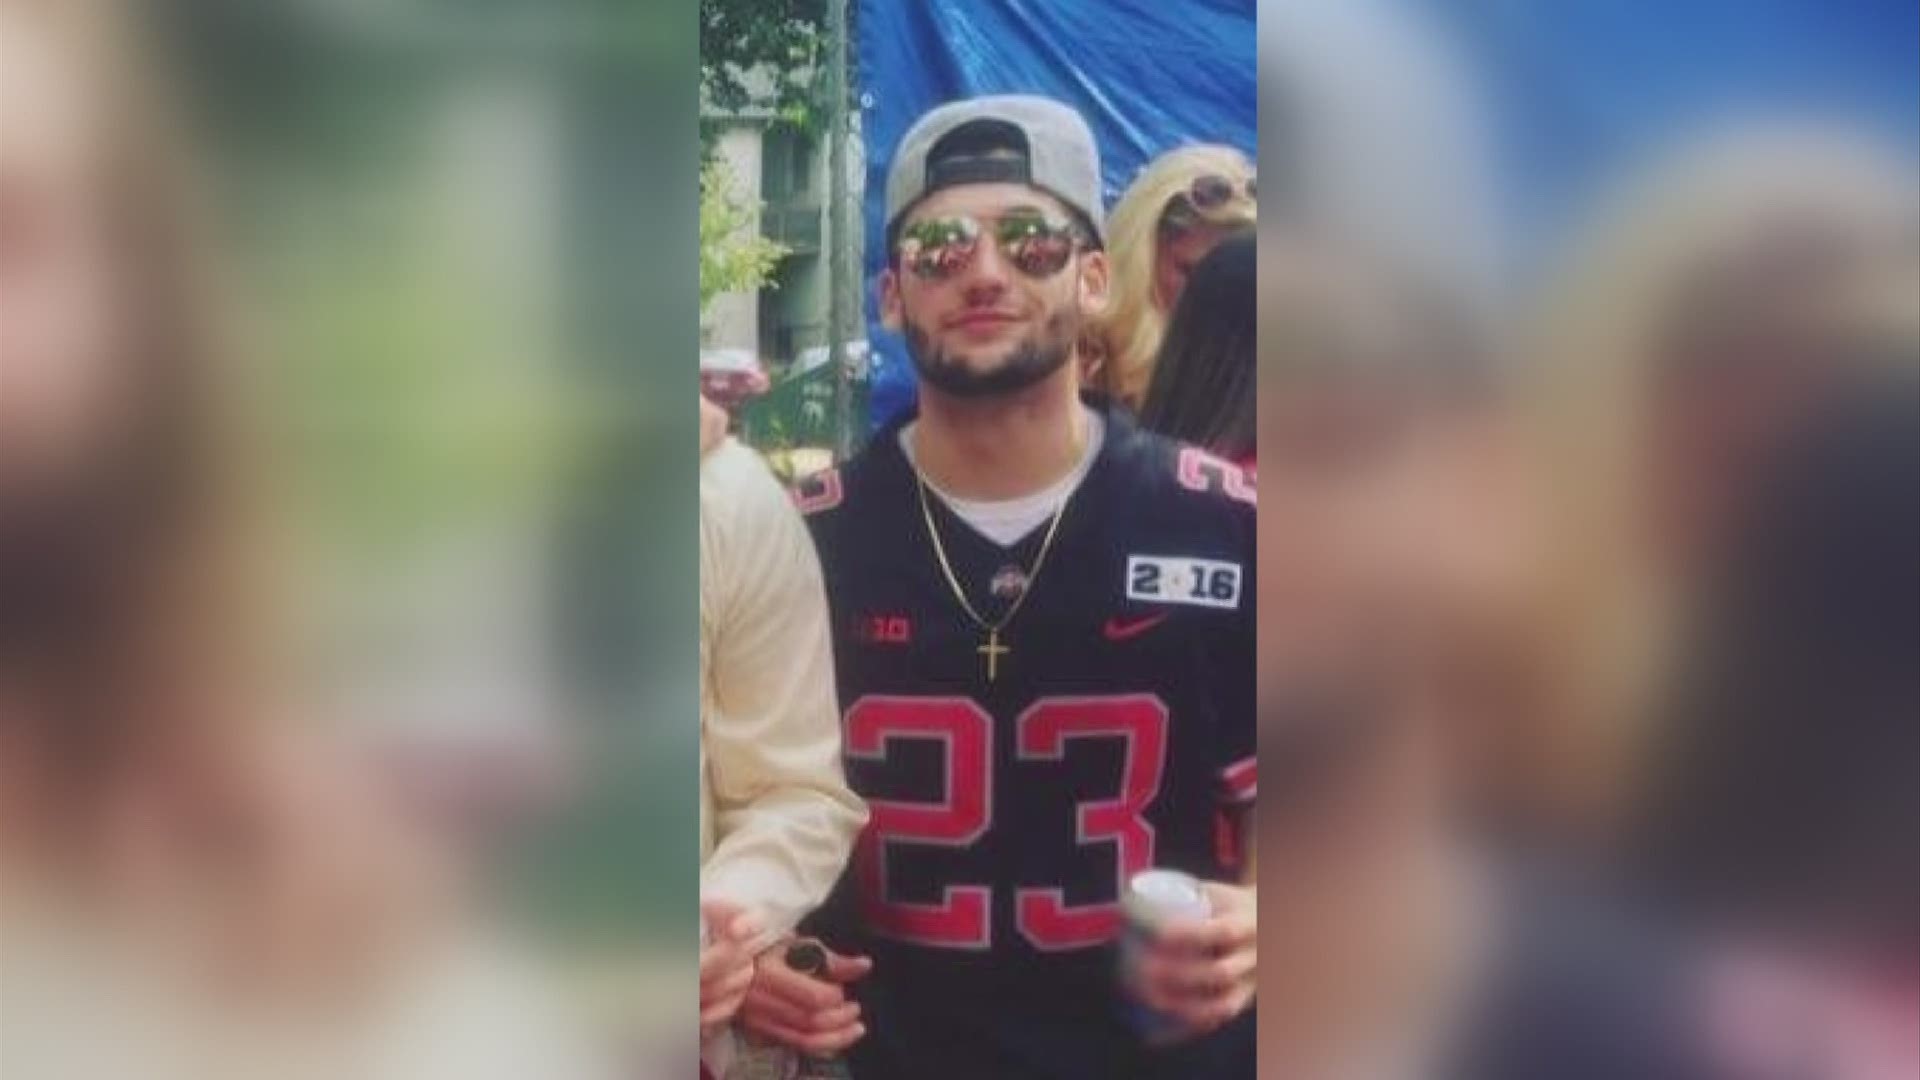 23-year-old Chase Meola was killed Sunday morning.